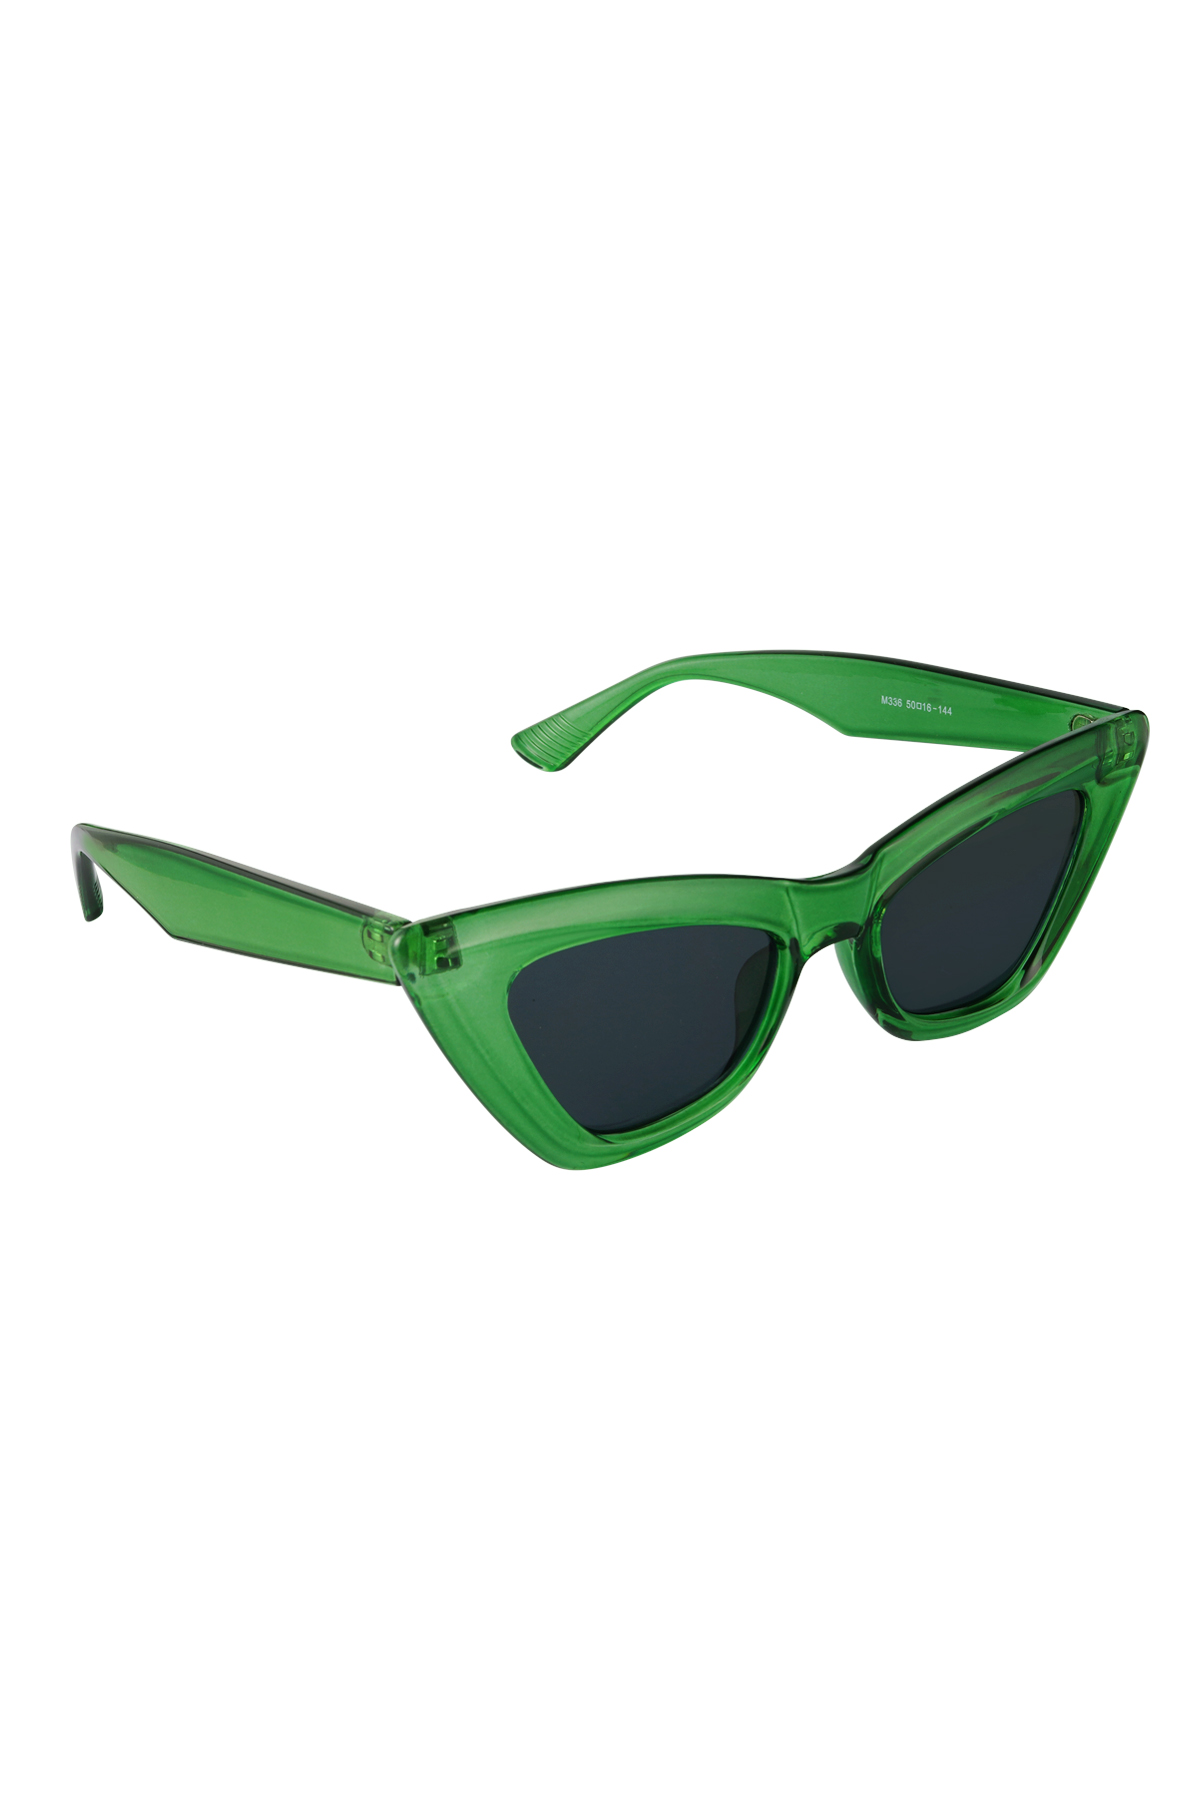 Gafas de sol cat eye trendy - verde